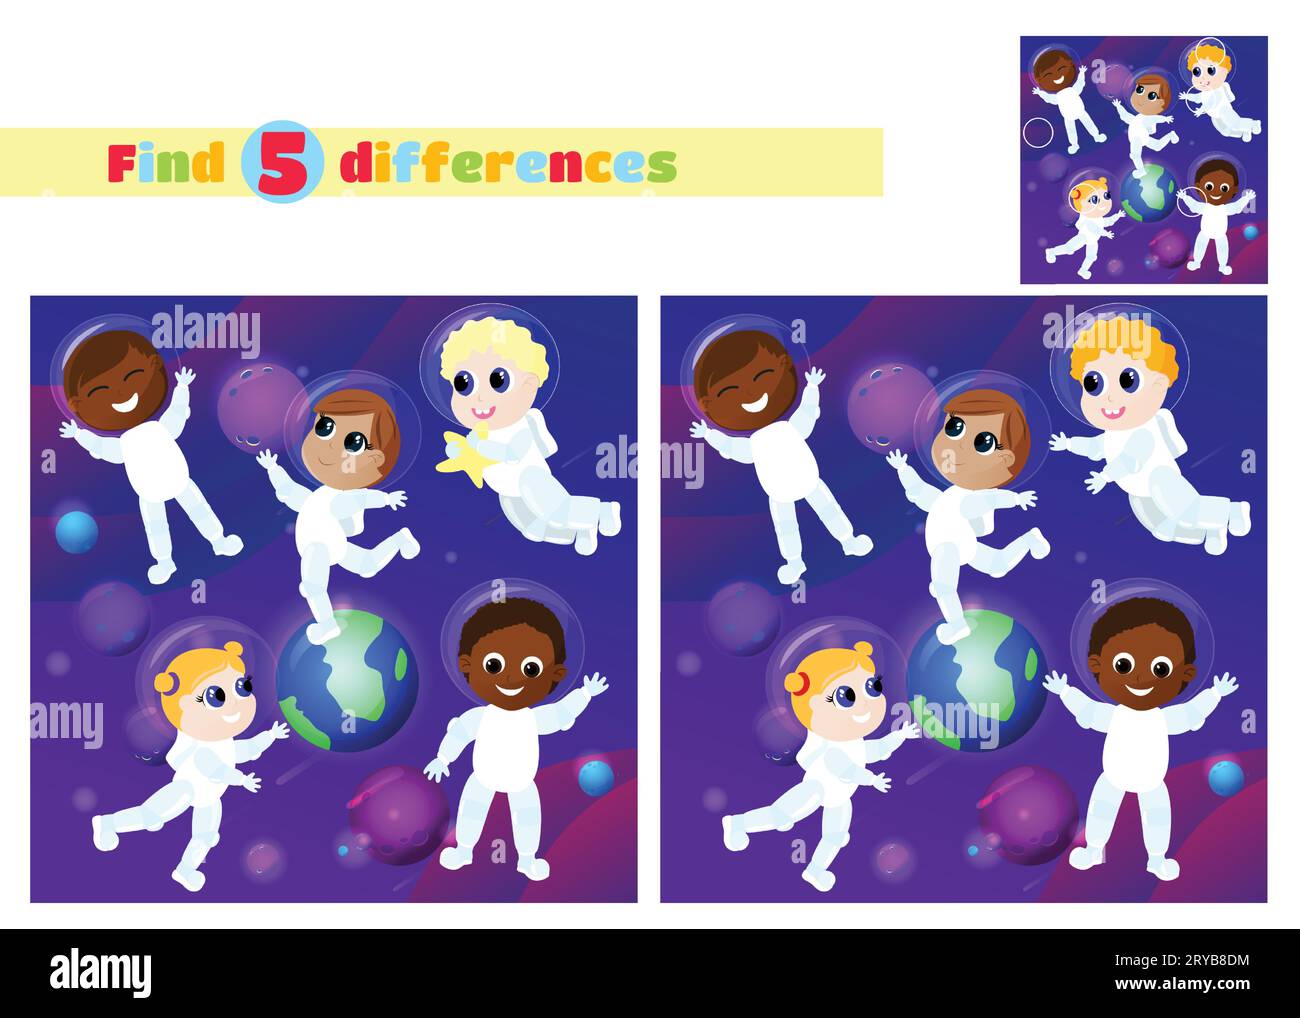 Trouvez les différences. Un groupe d'enfants multiculturels en costumes d'astronaute sont dans l'espace. Ils s'amusent dans le contexte de la planète Terre. Illustration de Vecteur